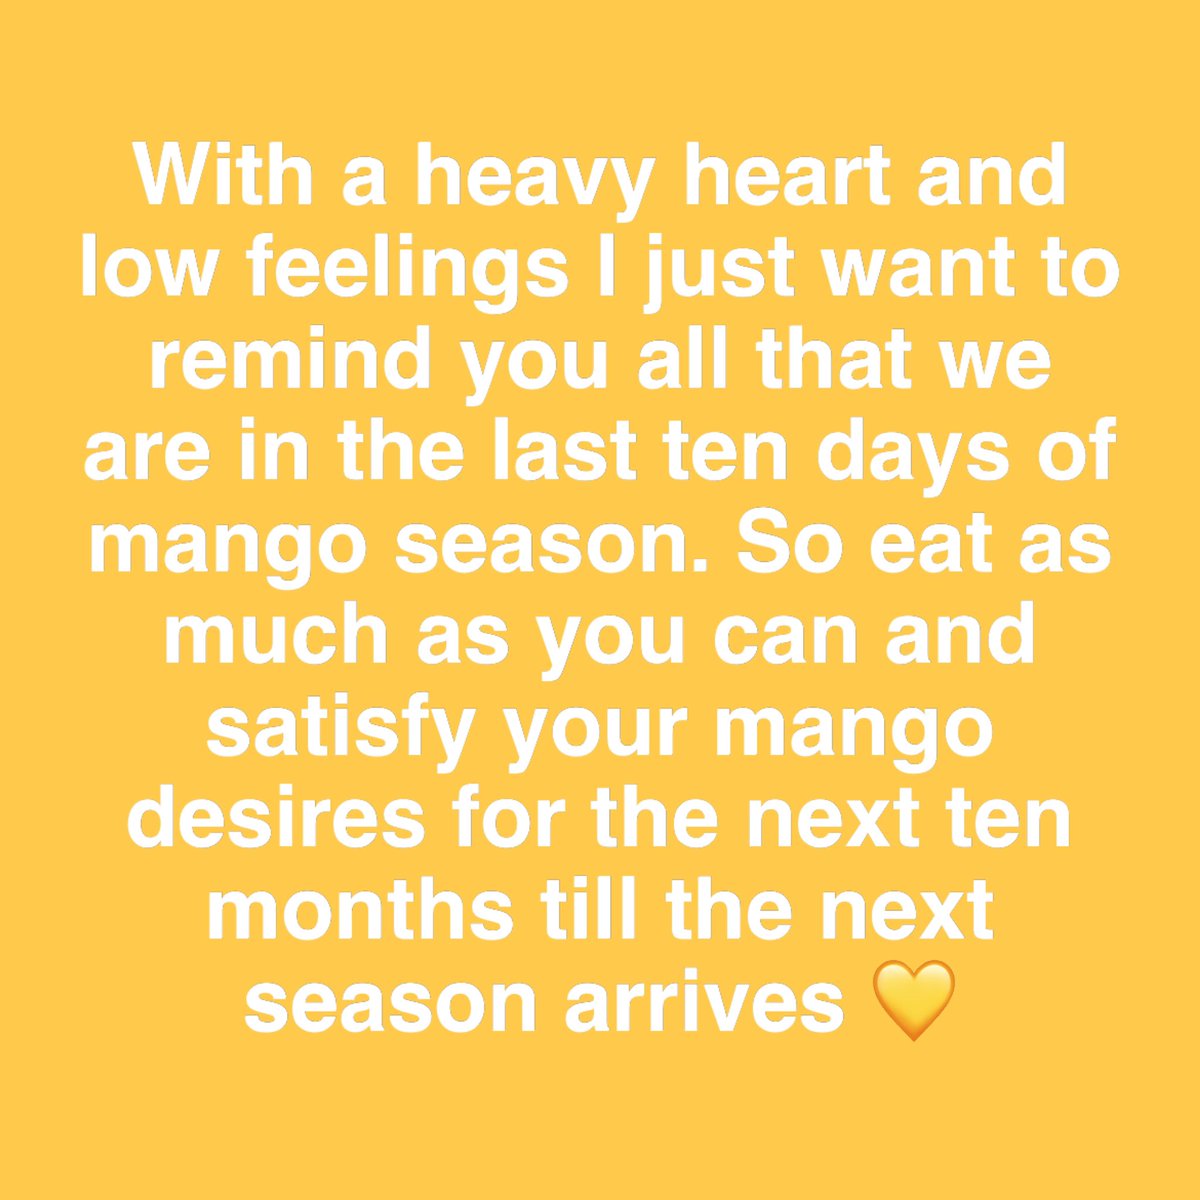 #MangoSeason #MangoLove #Mangoes #ChennaiFoodie